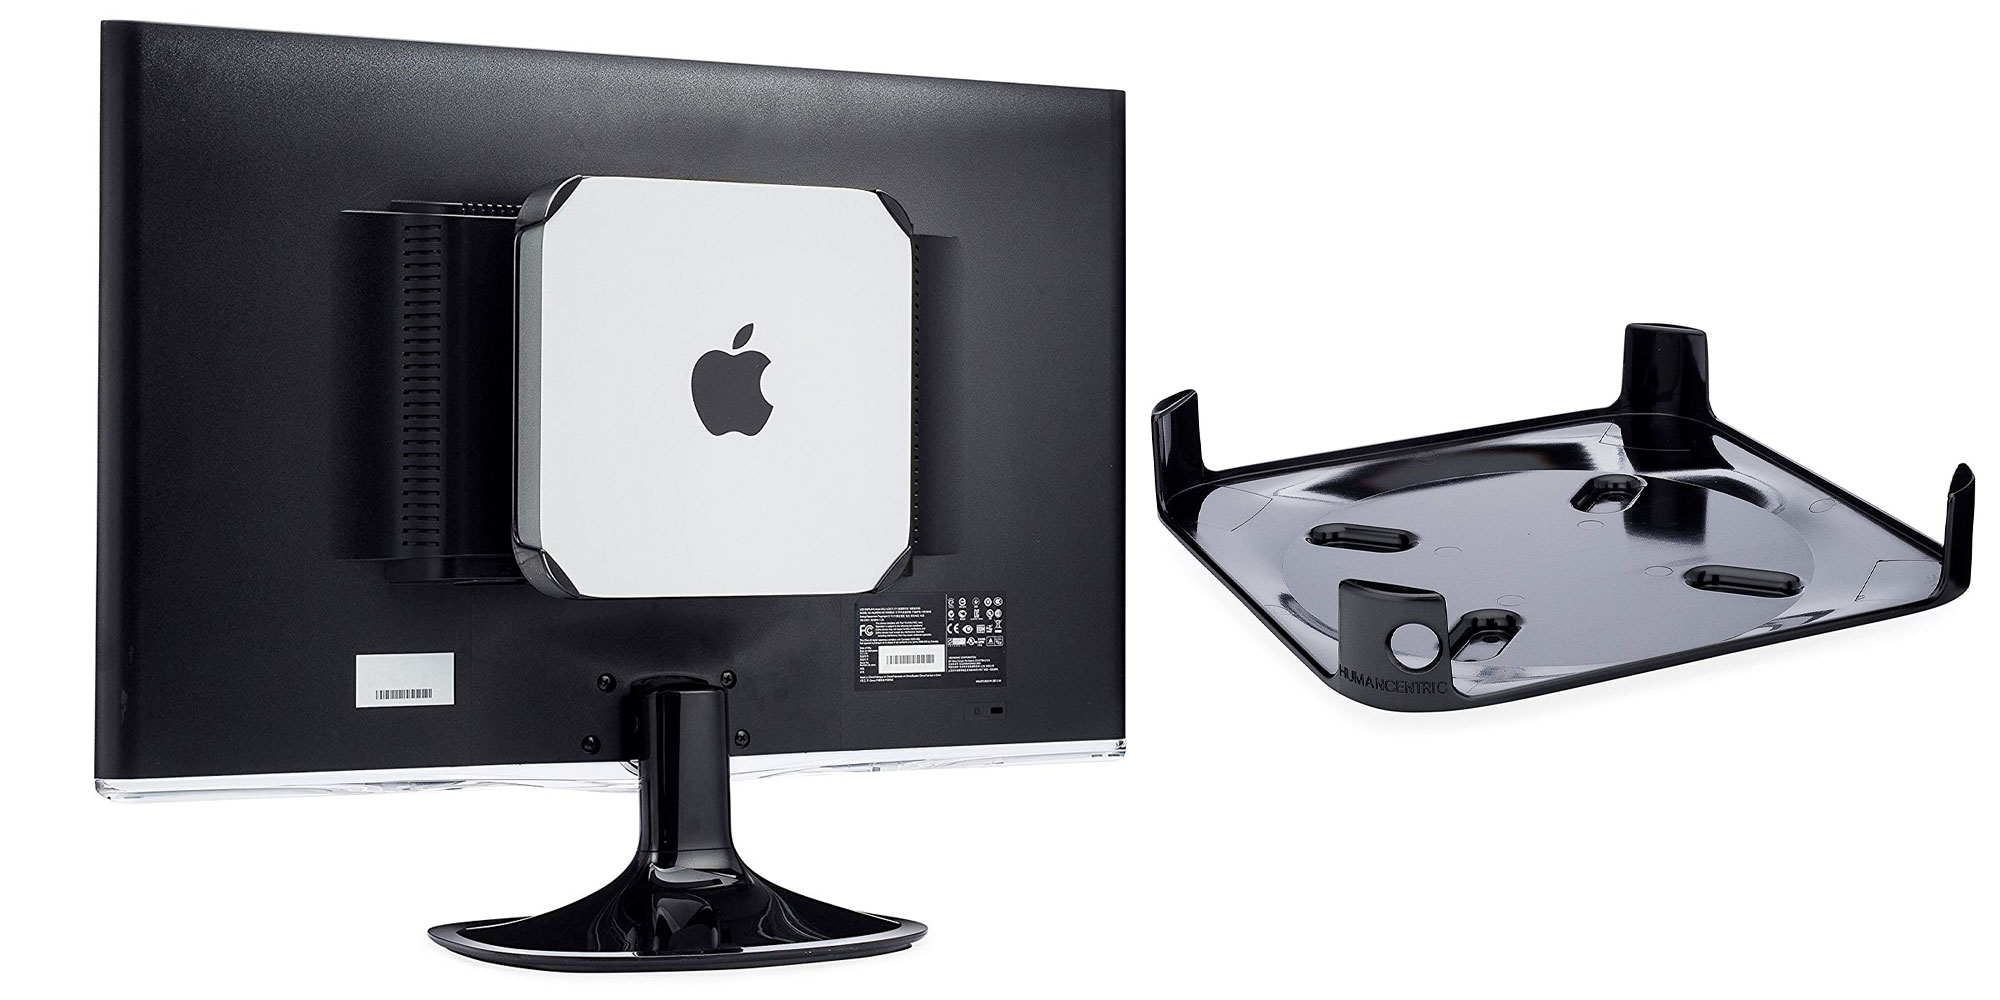 monitor configuration for 2012 mac mini